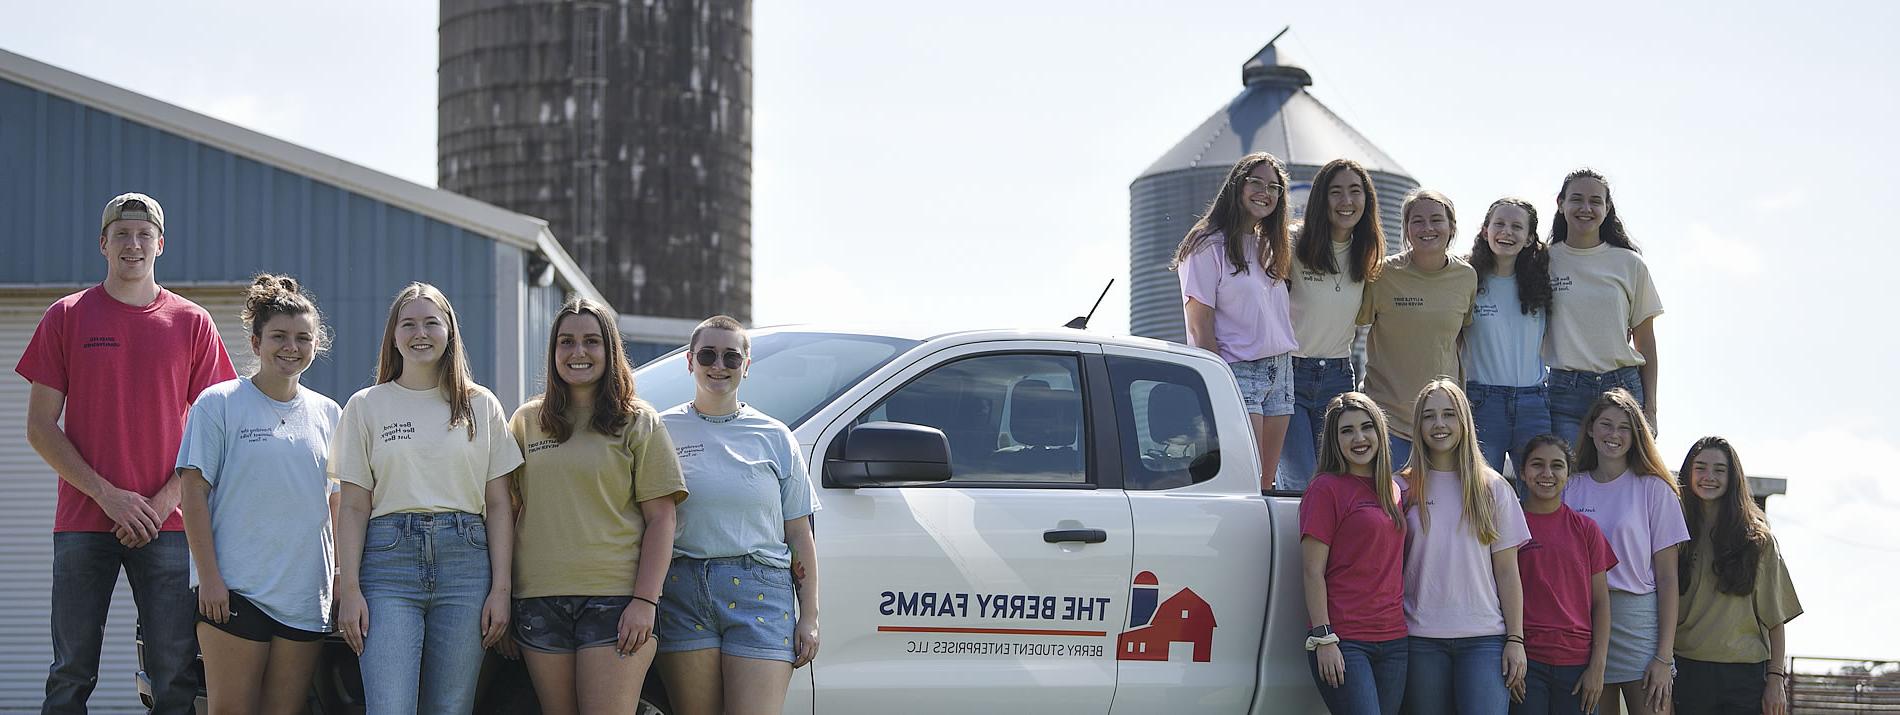 一群浆果农场的团队成员站在蓝色科技谷仓的浆果农场卡车里和周围